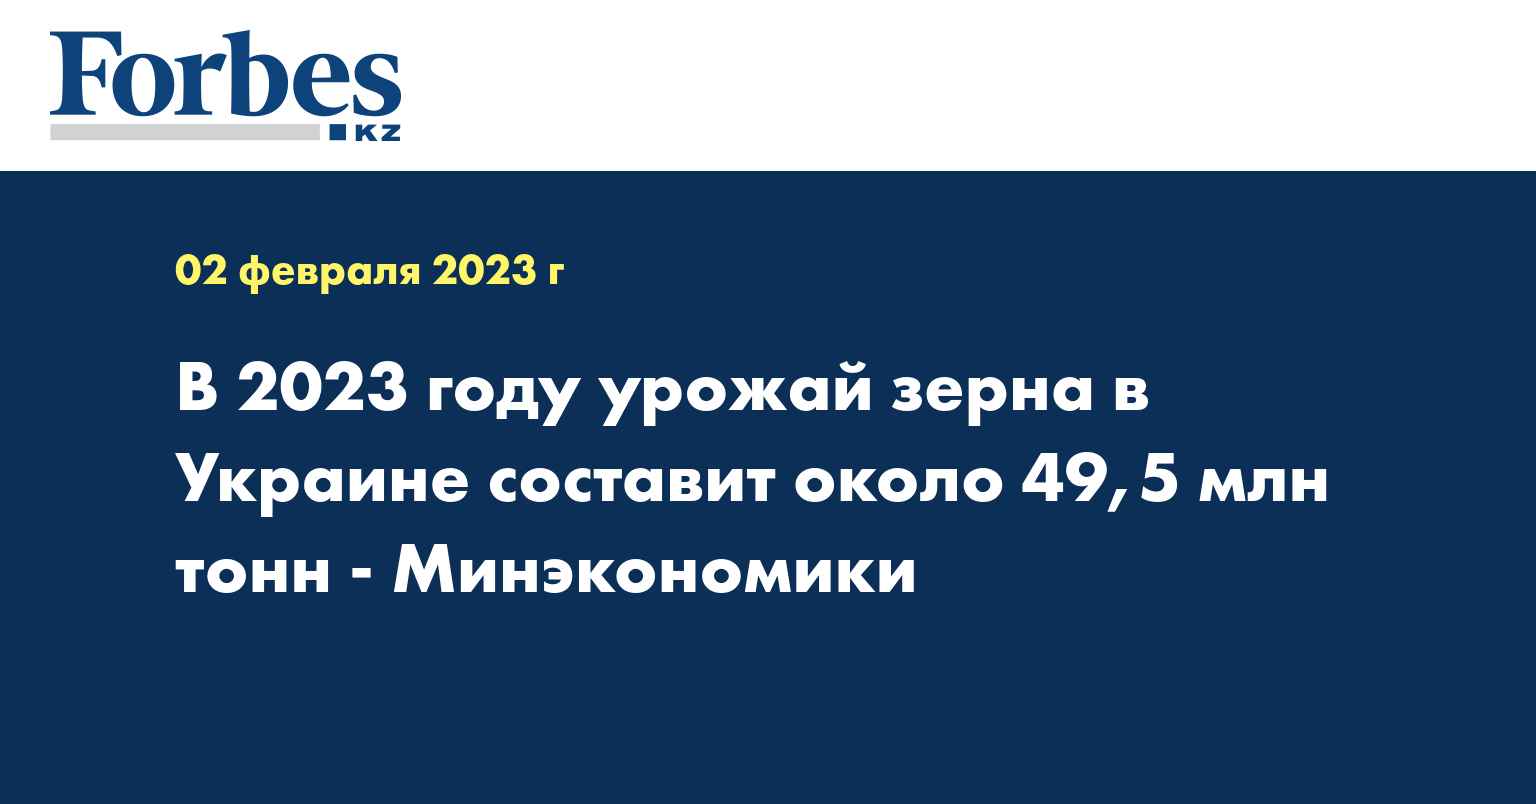 В 2023 году урожай зерна в Украине составит около 49,5 млн тонн - Минэкономики